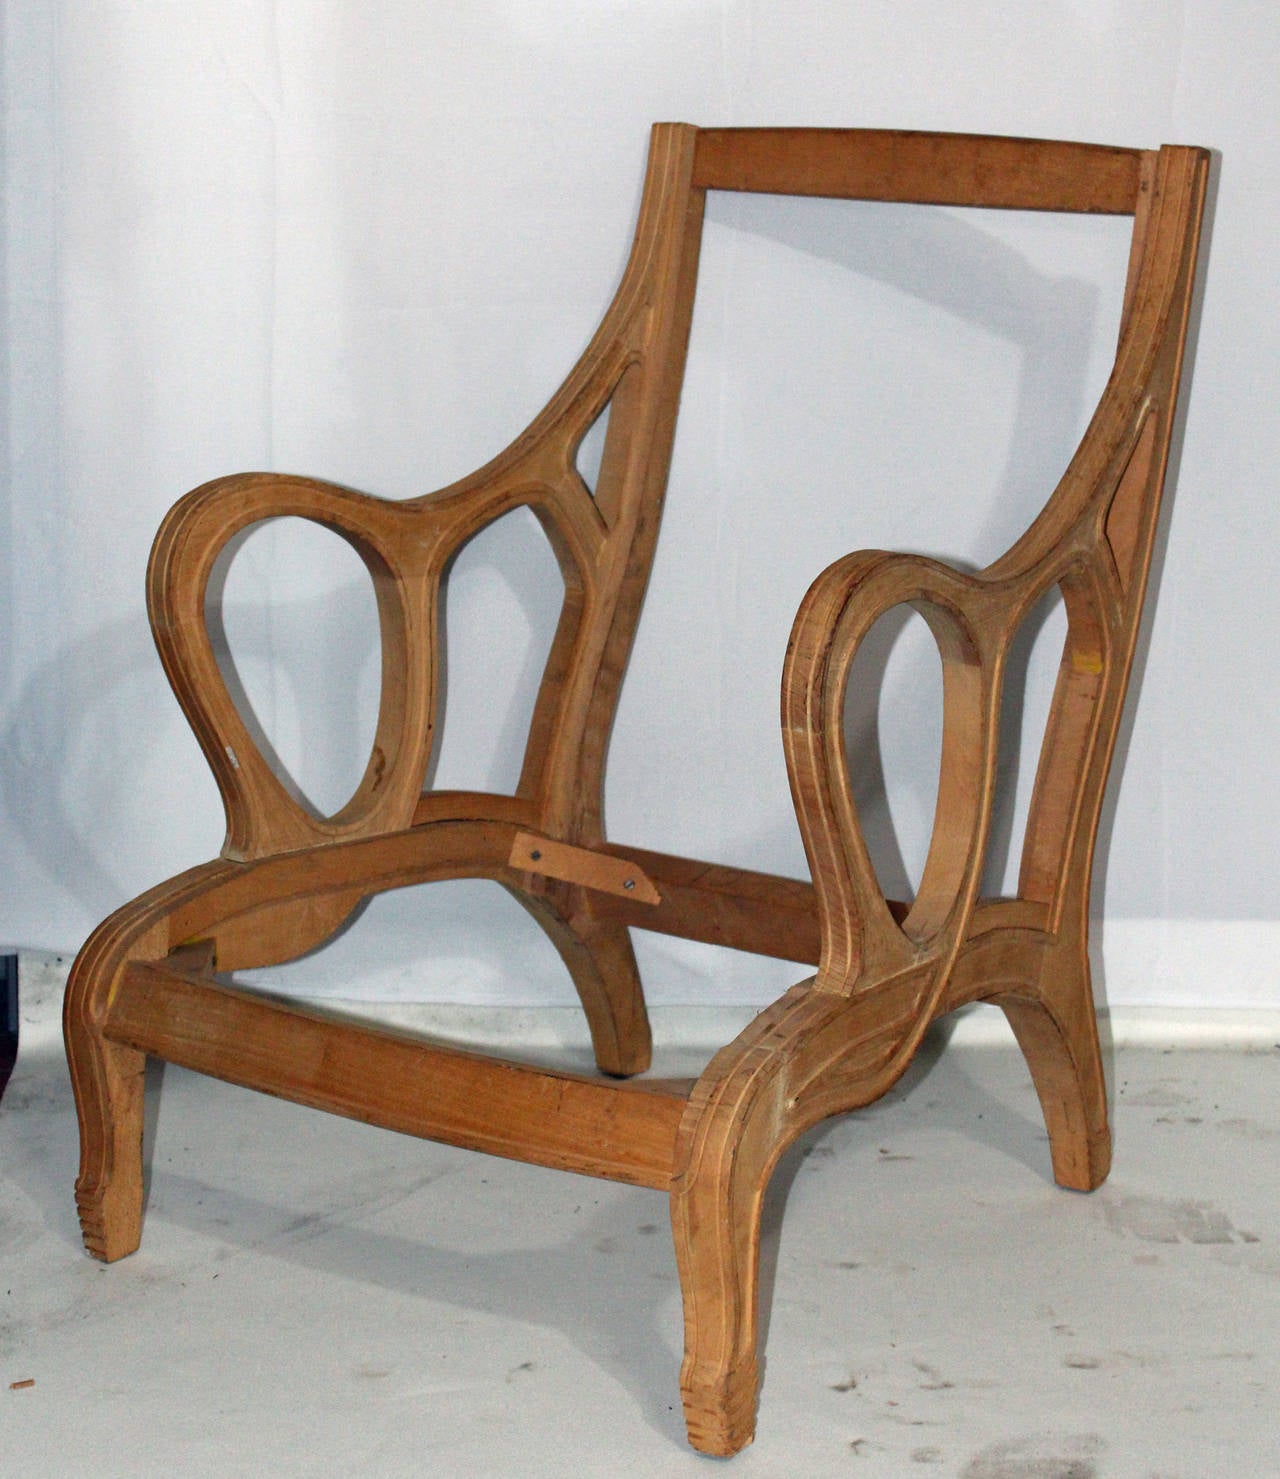 Cadre de chaise vintage chic de la collection David Barrett. Prêt pour la finition et le rembourrage. Hauteur des bras : 23